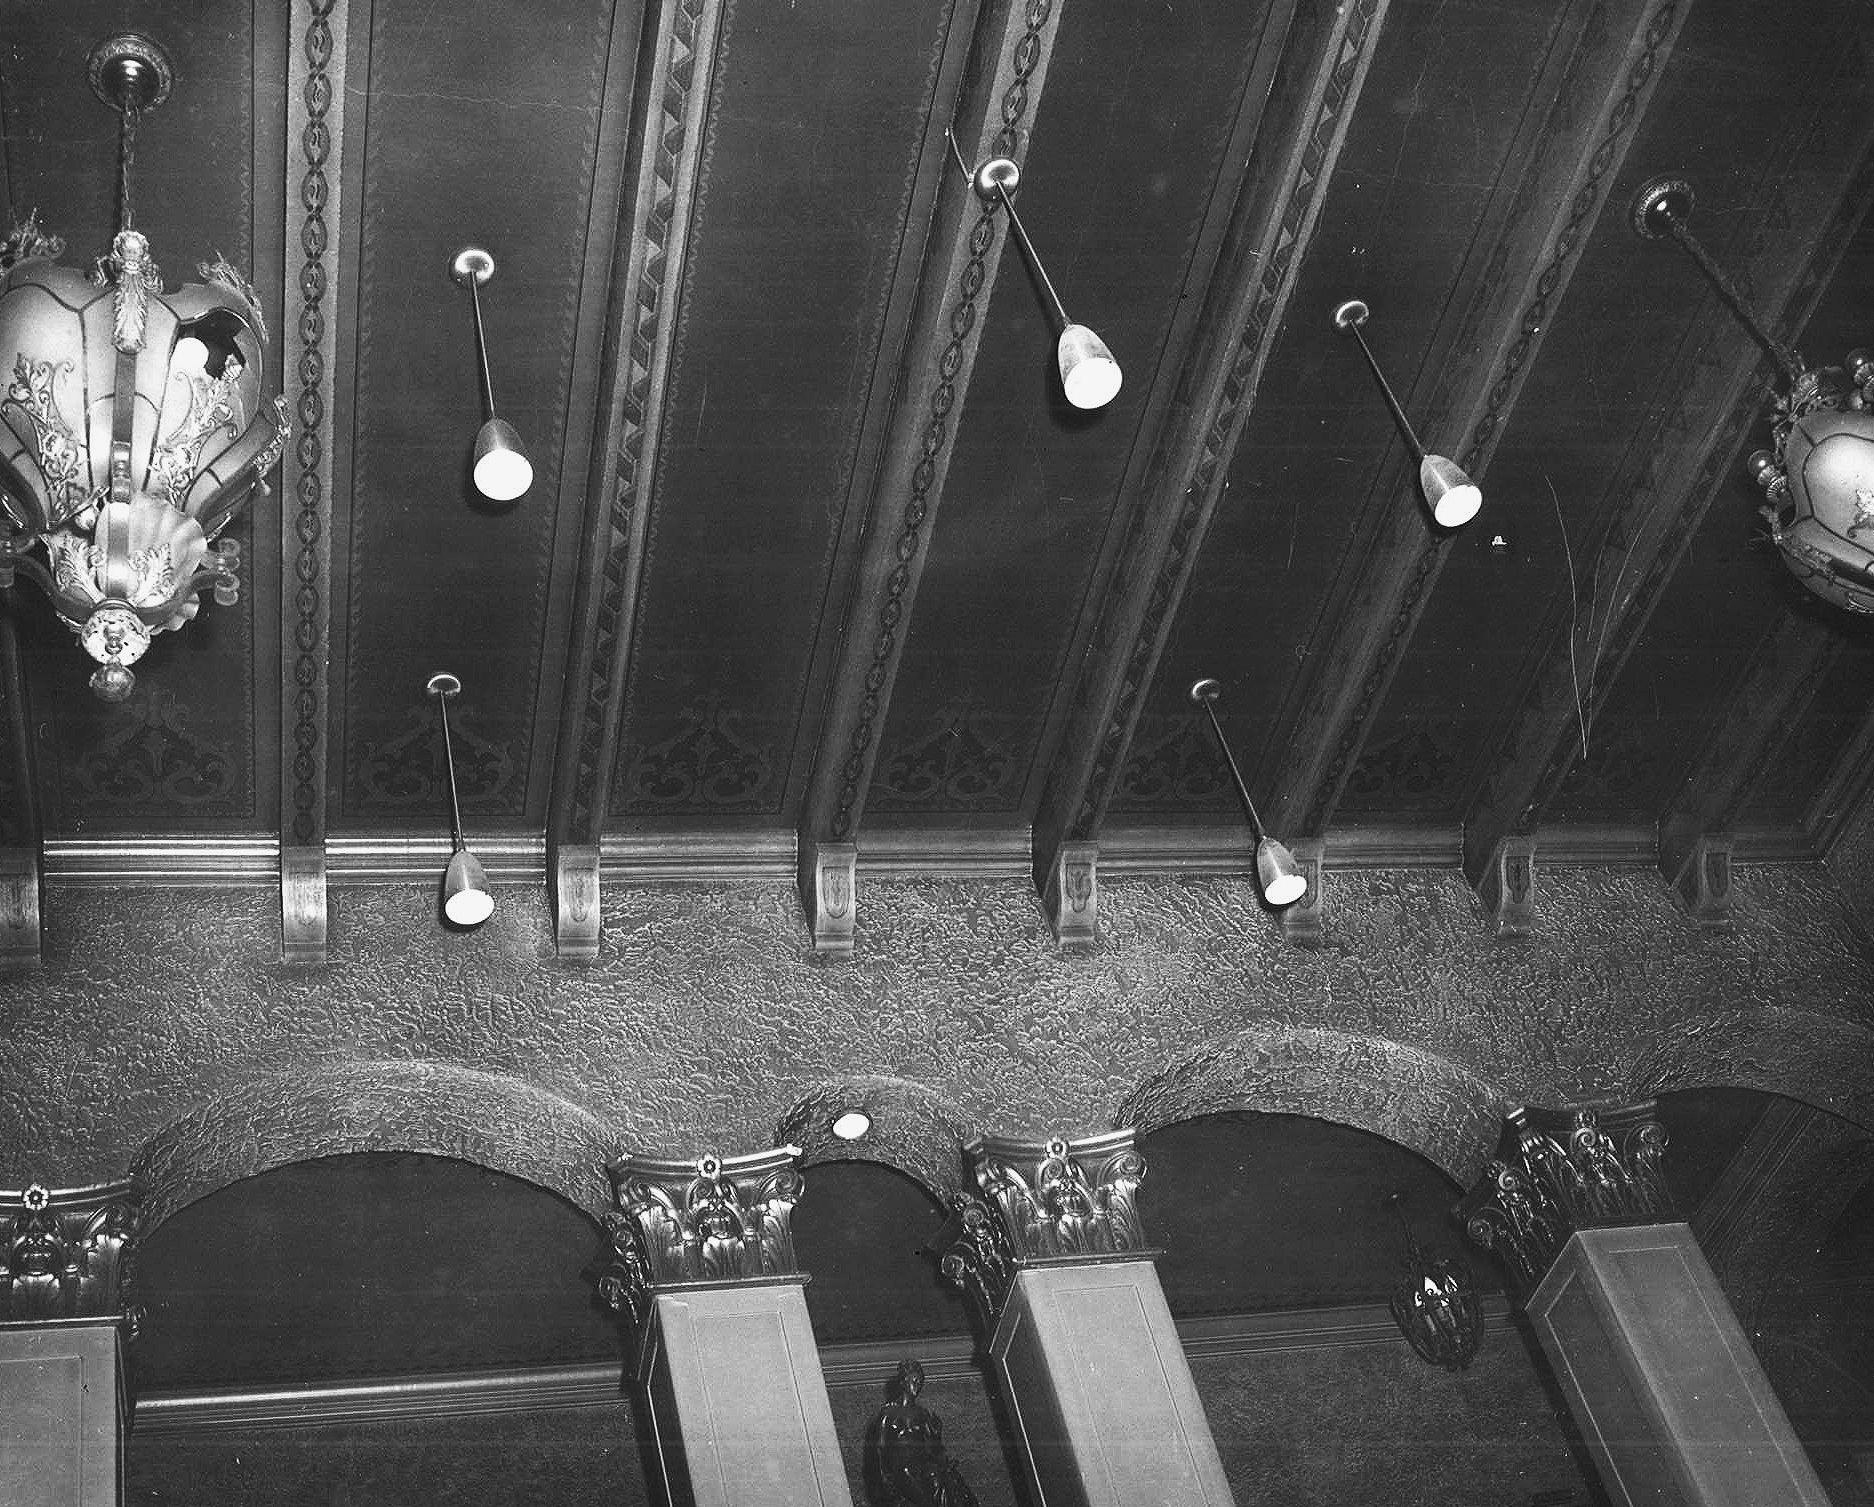 Lobby Ceiling, 1956